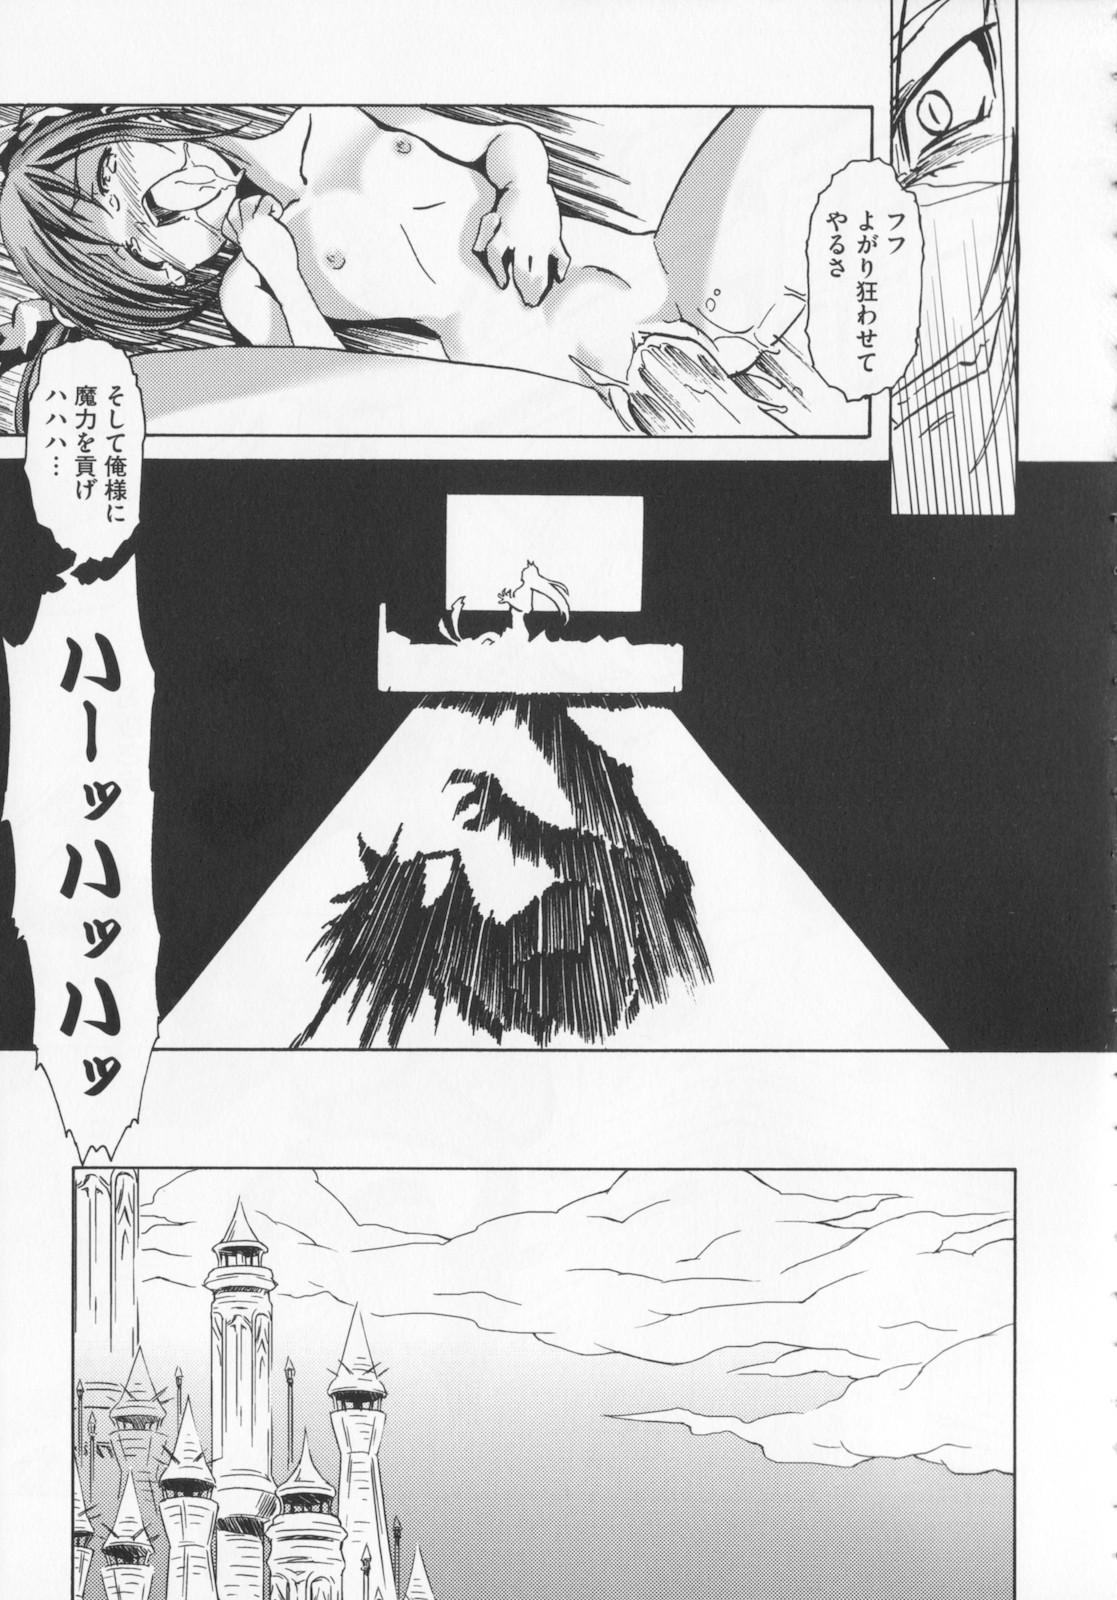 [Kanoe] Kuro no utahime -Yami no enishi- 1 118